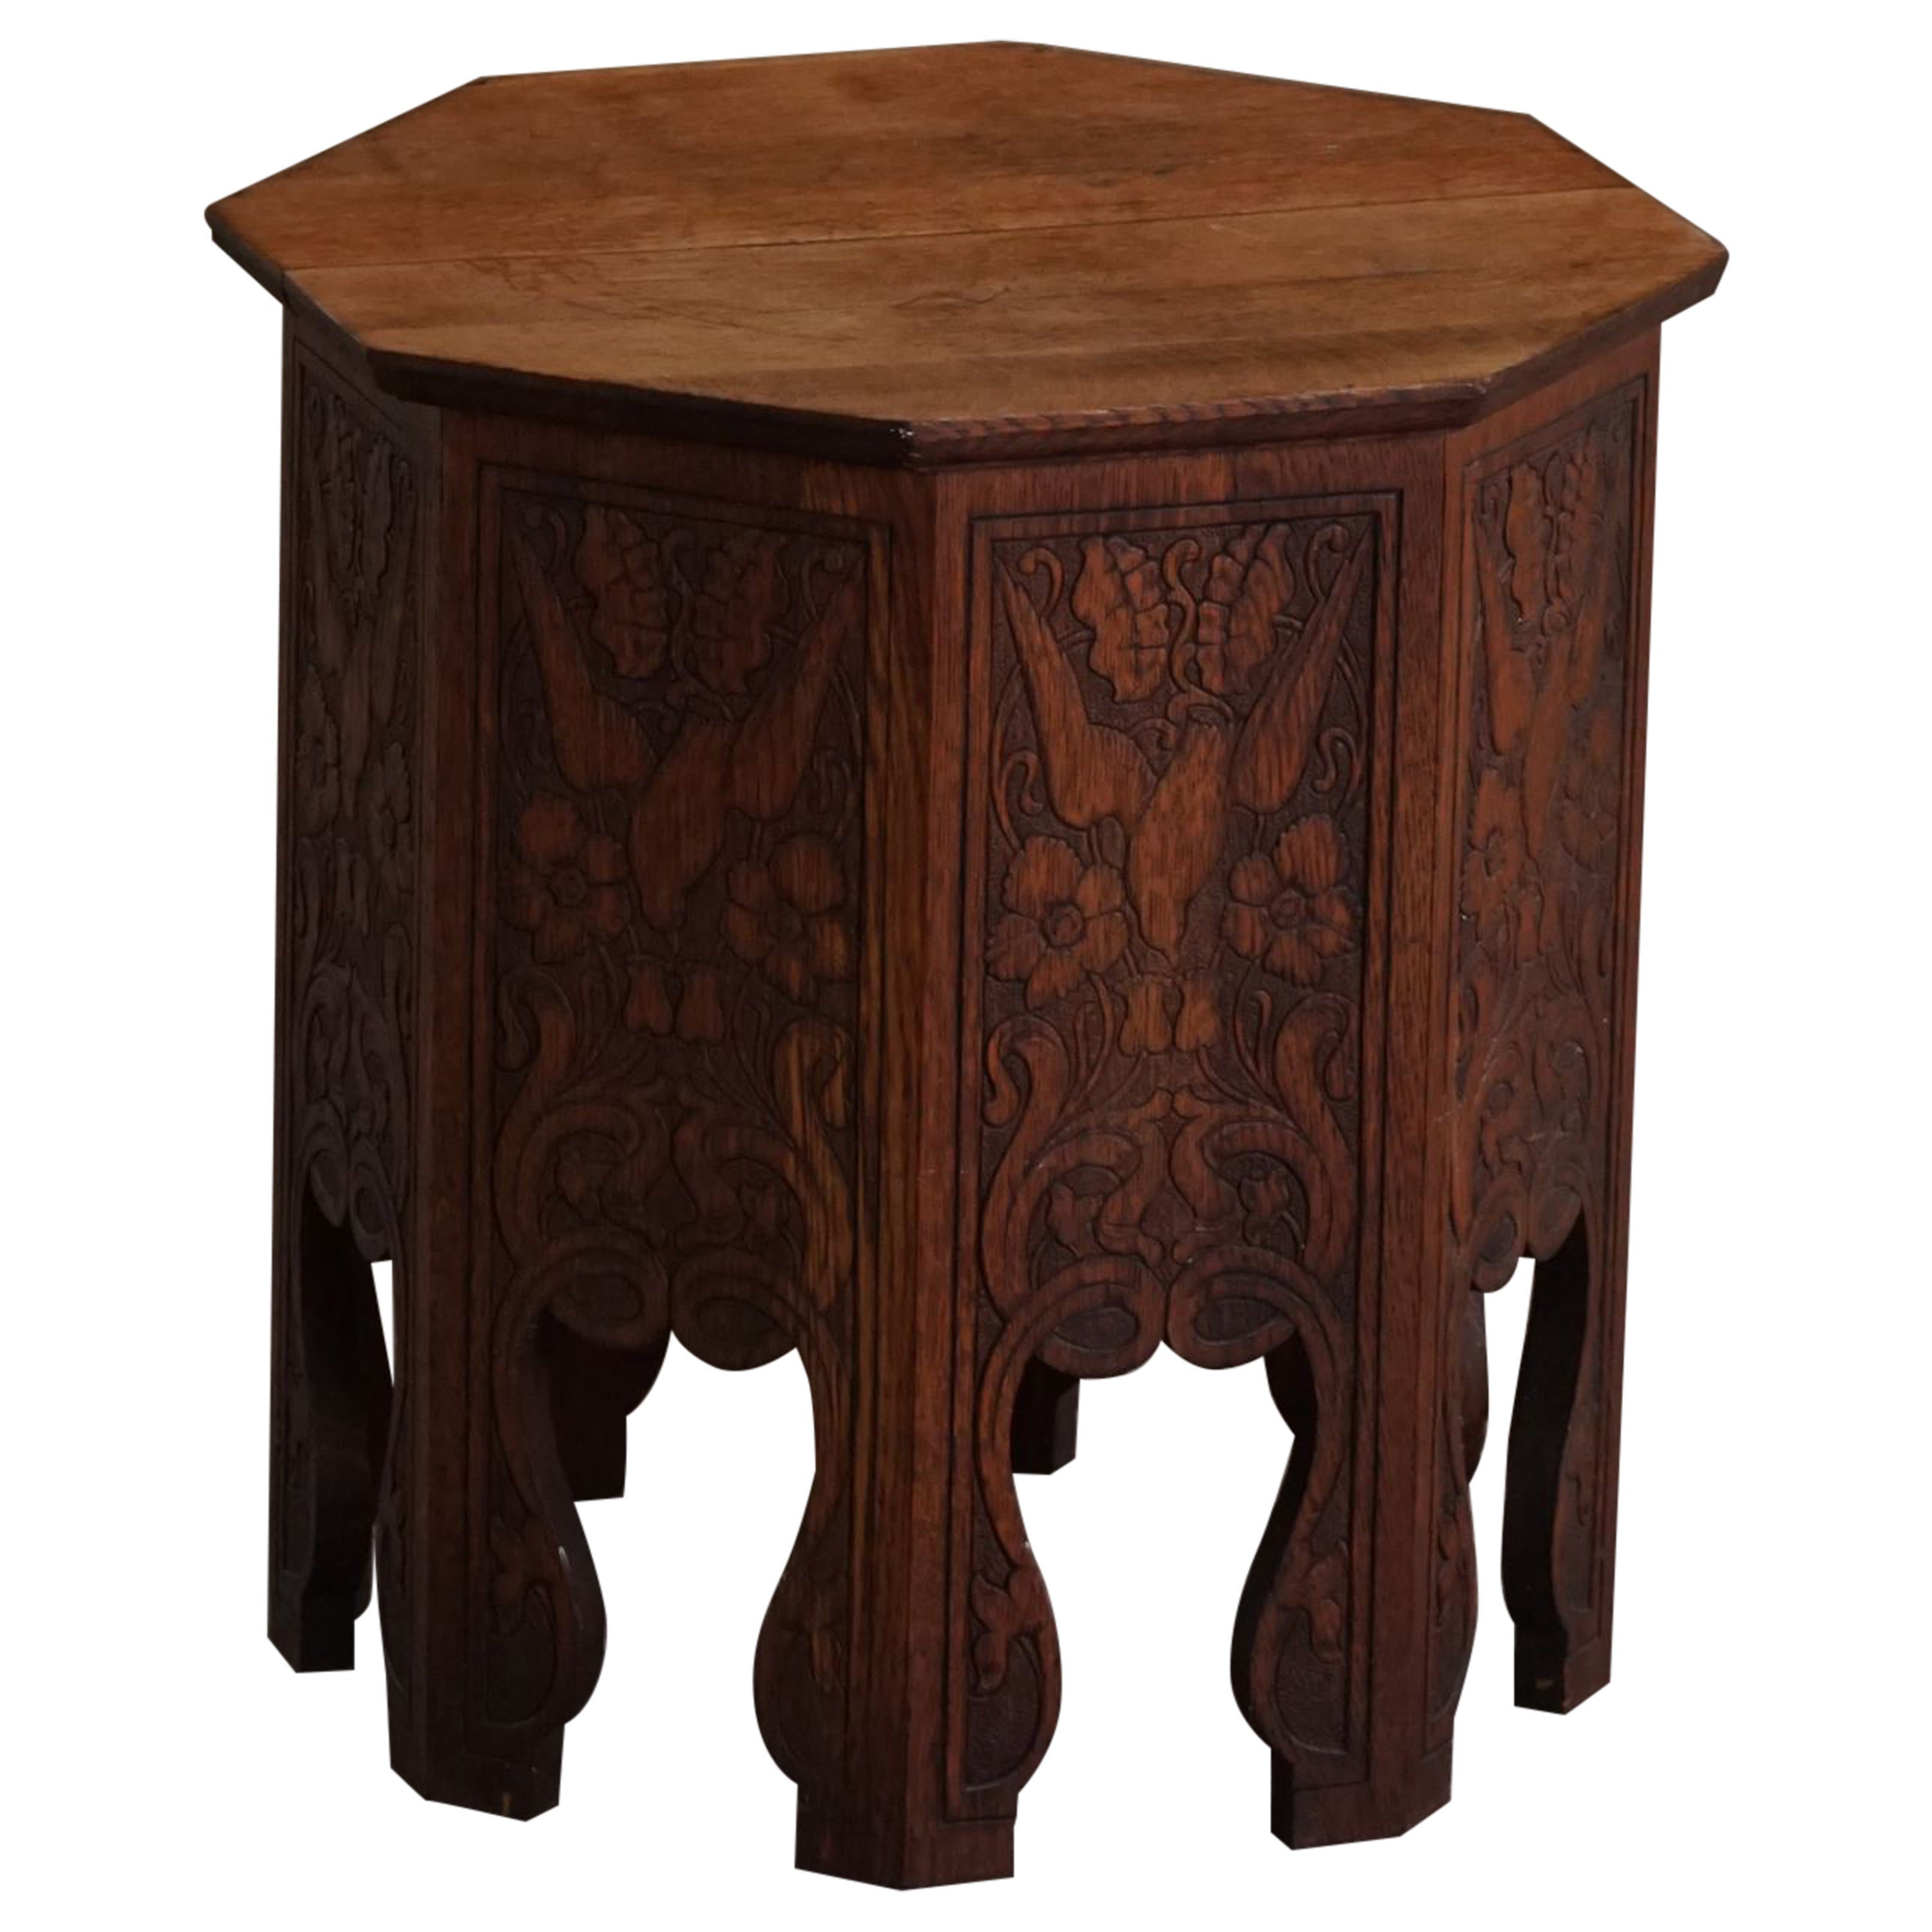 Mid-20th Century Organic Side Table in Oak with 8 Legs, Scandinavian Modern